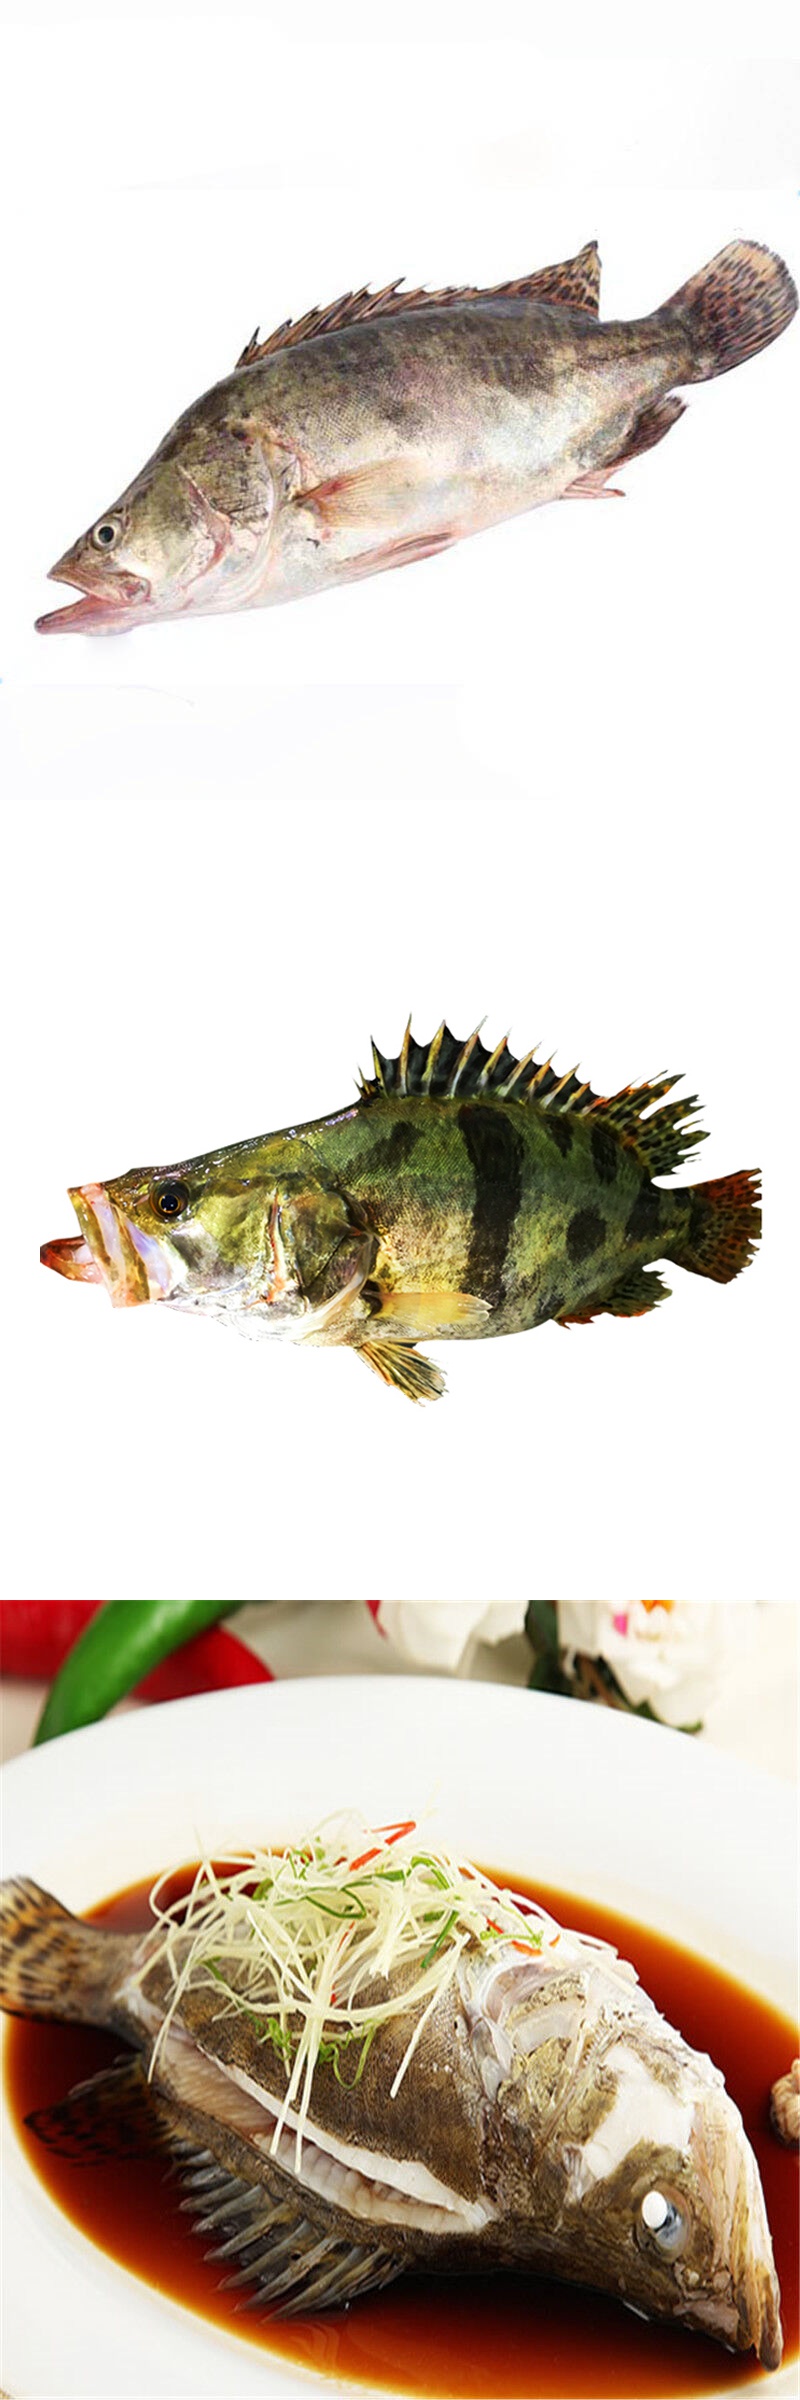 桂鱼500g 1条 新鲜 鳜鱼贵鱼海鲜水产 桂花鱼 生鲜